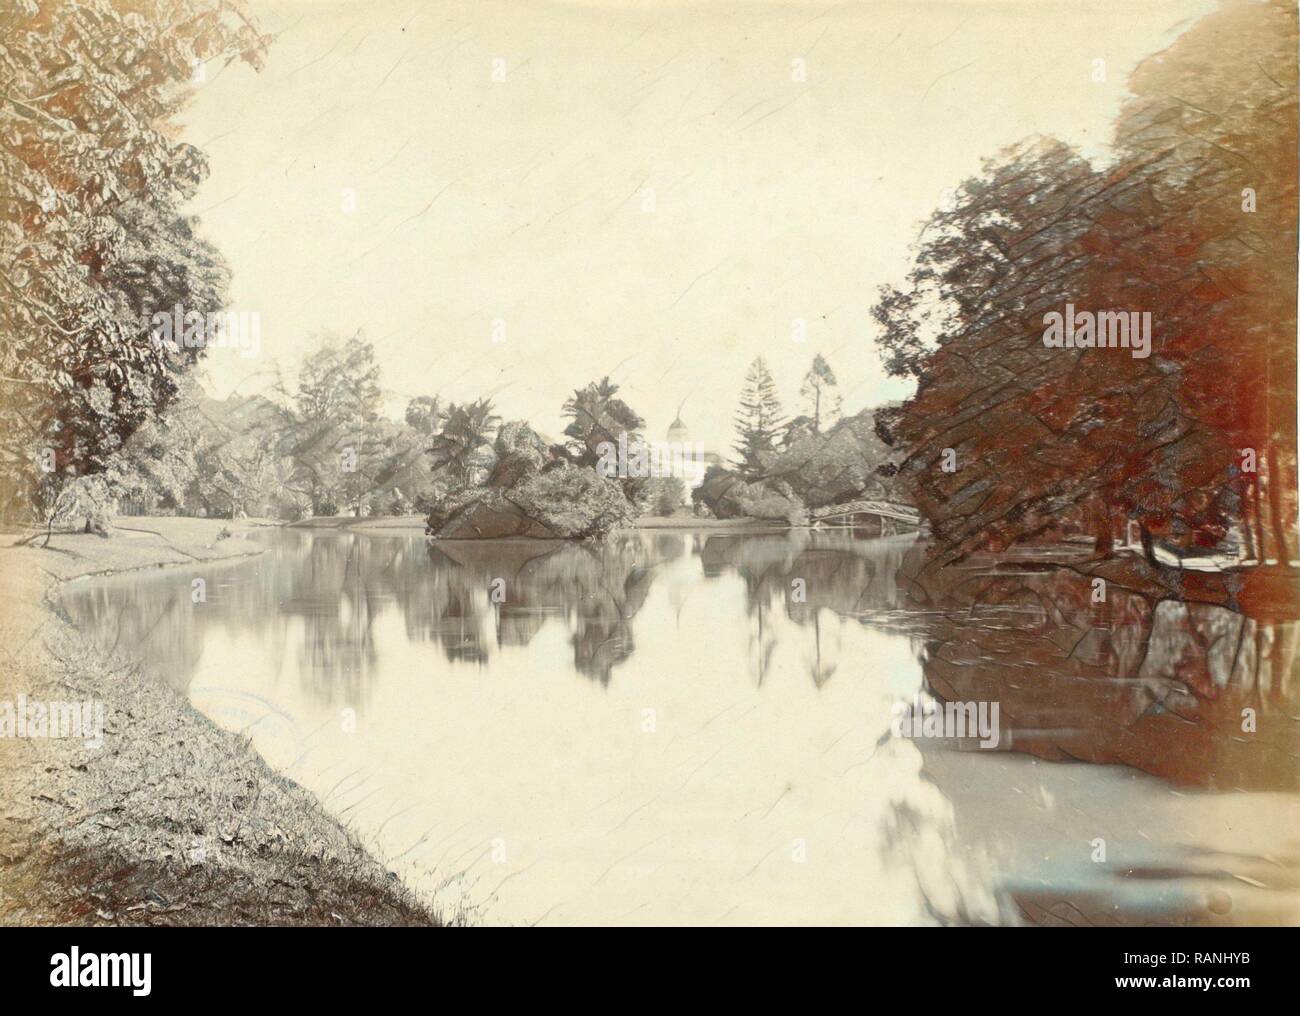 Acqua nelle Indie orientali olandesi alla fine con un ponte e un campanile di una chiesa, anonimo, c. 1895 - c. 1905. Reinventato Foto Stock